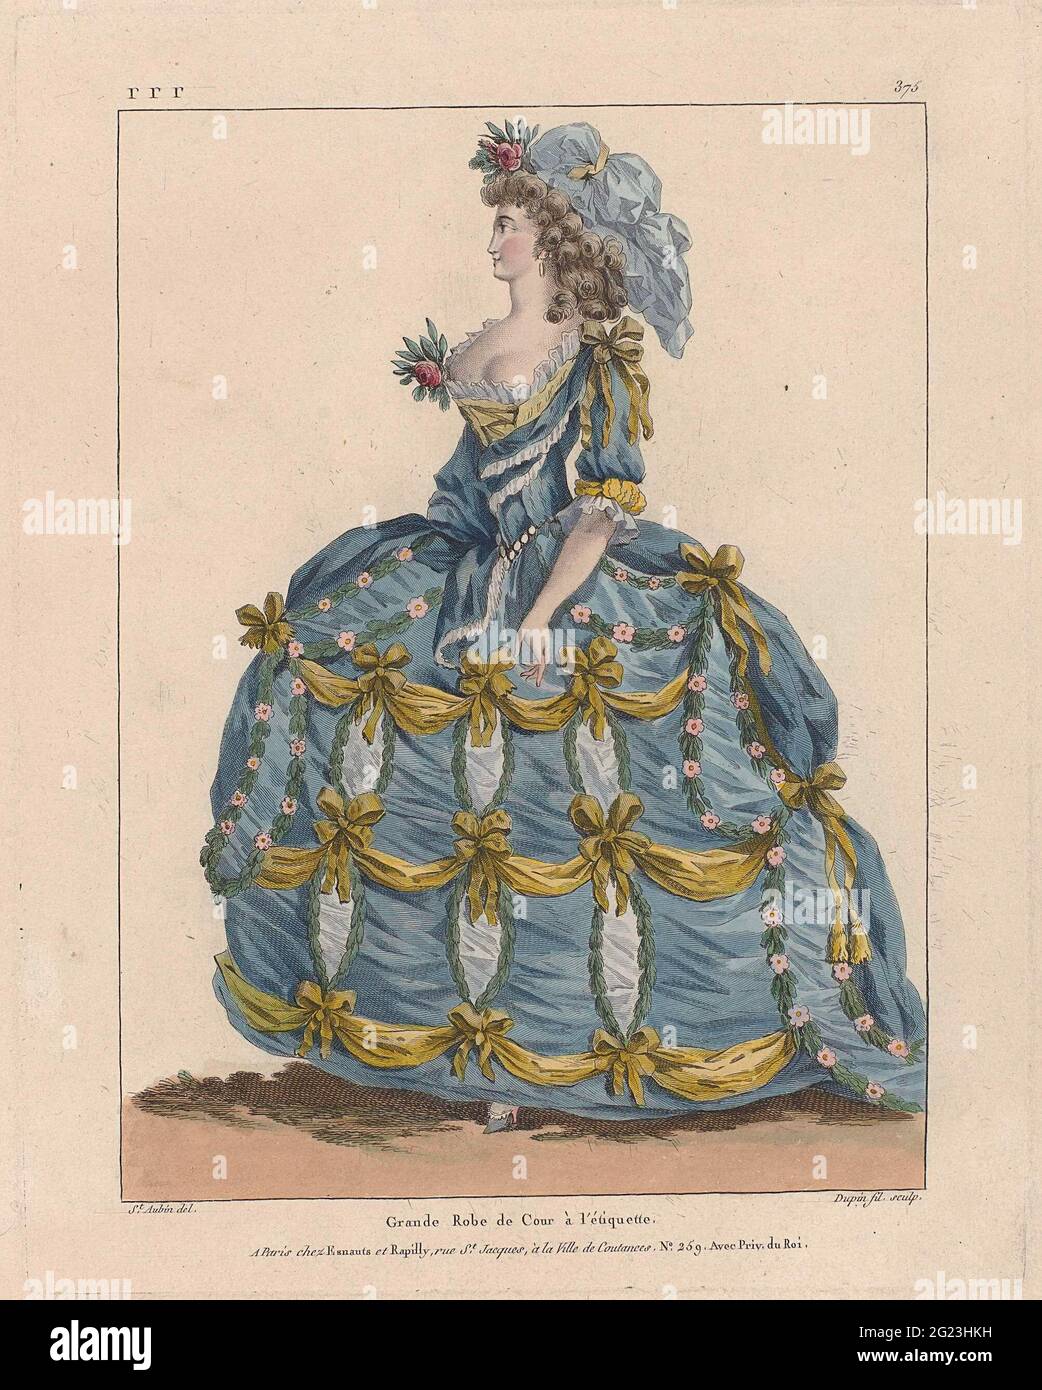 Marie Antoinette: La Reine de la mode: Gallerie des modes et costumes  English. Les reines françaises devaient donner l'exemple dans le domaine de  la mode. En tant qu'épouse de Louis XVI, Marie-Antoinette